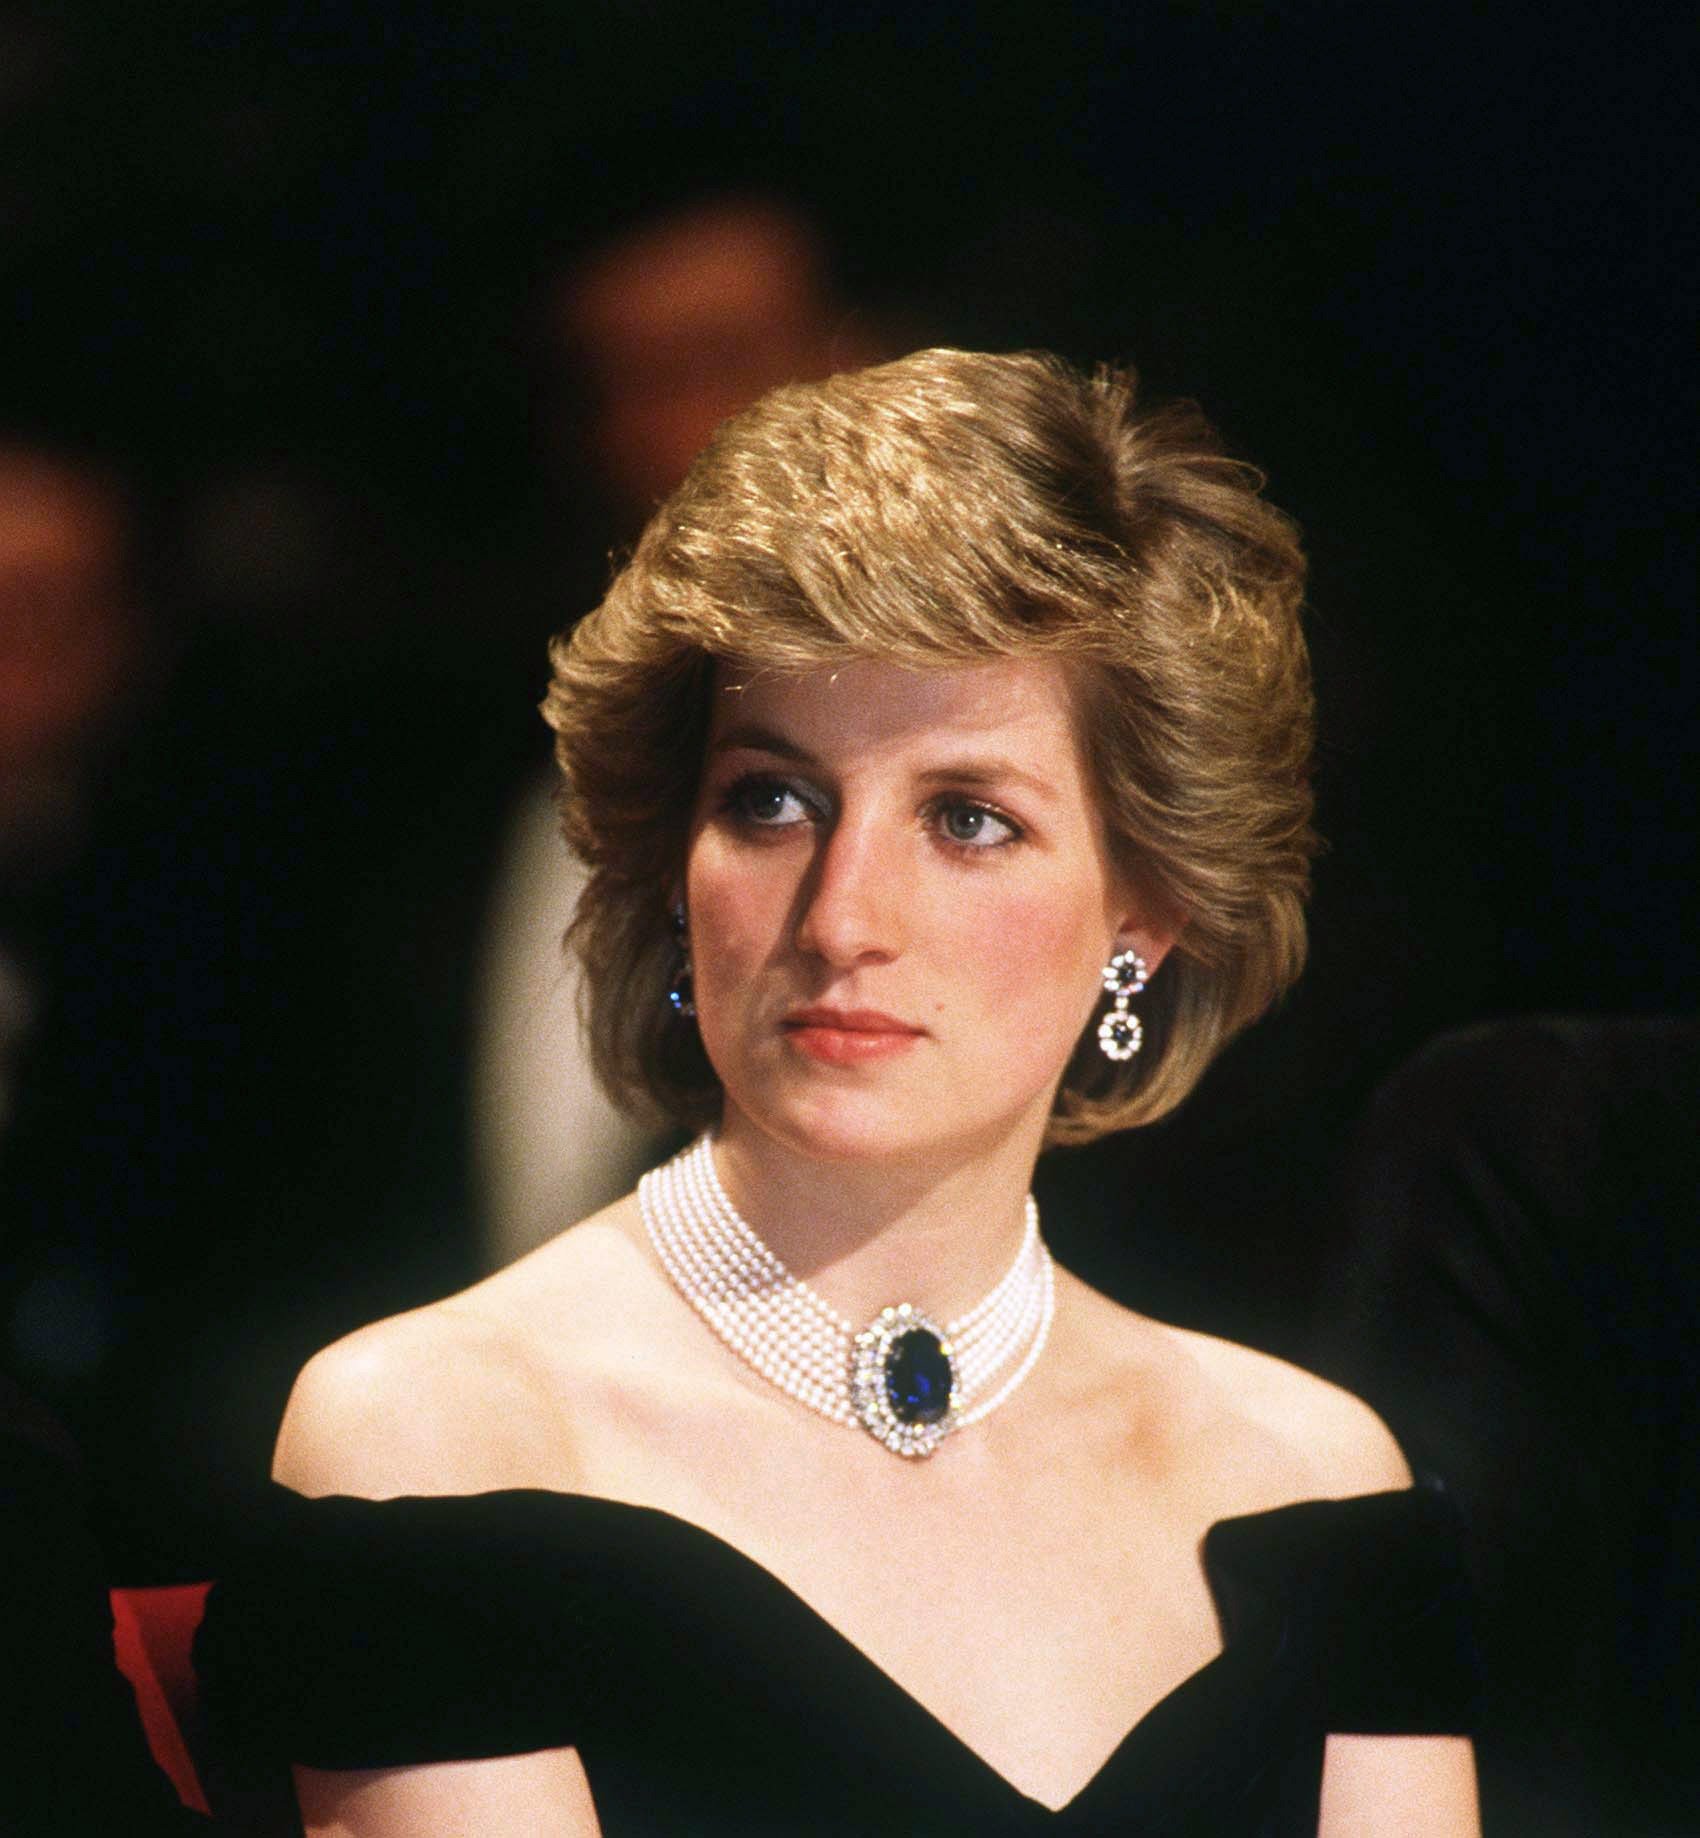 Prinzessin von Wales am 16. April 1986 in Wien, Österreich. | Quelle: Getty Images